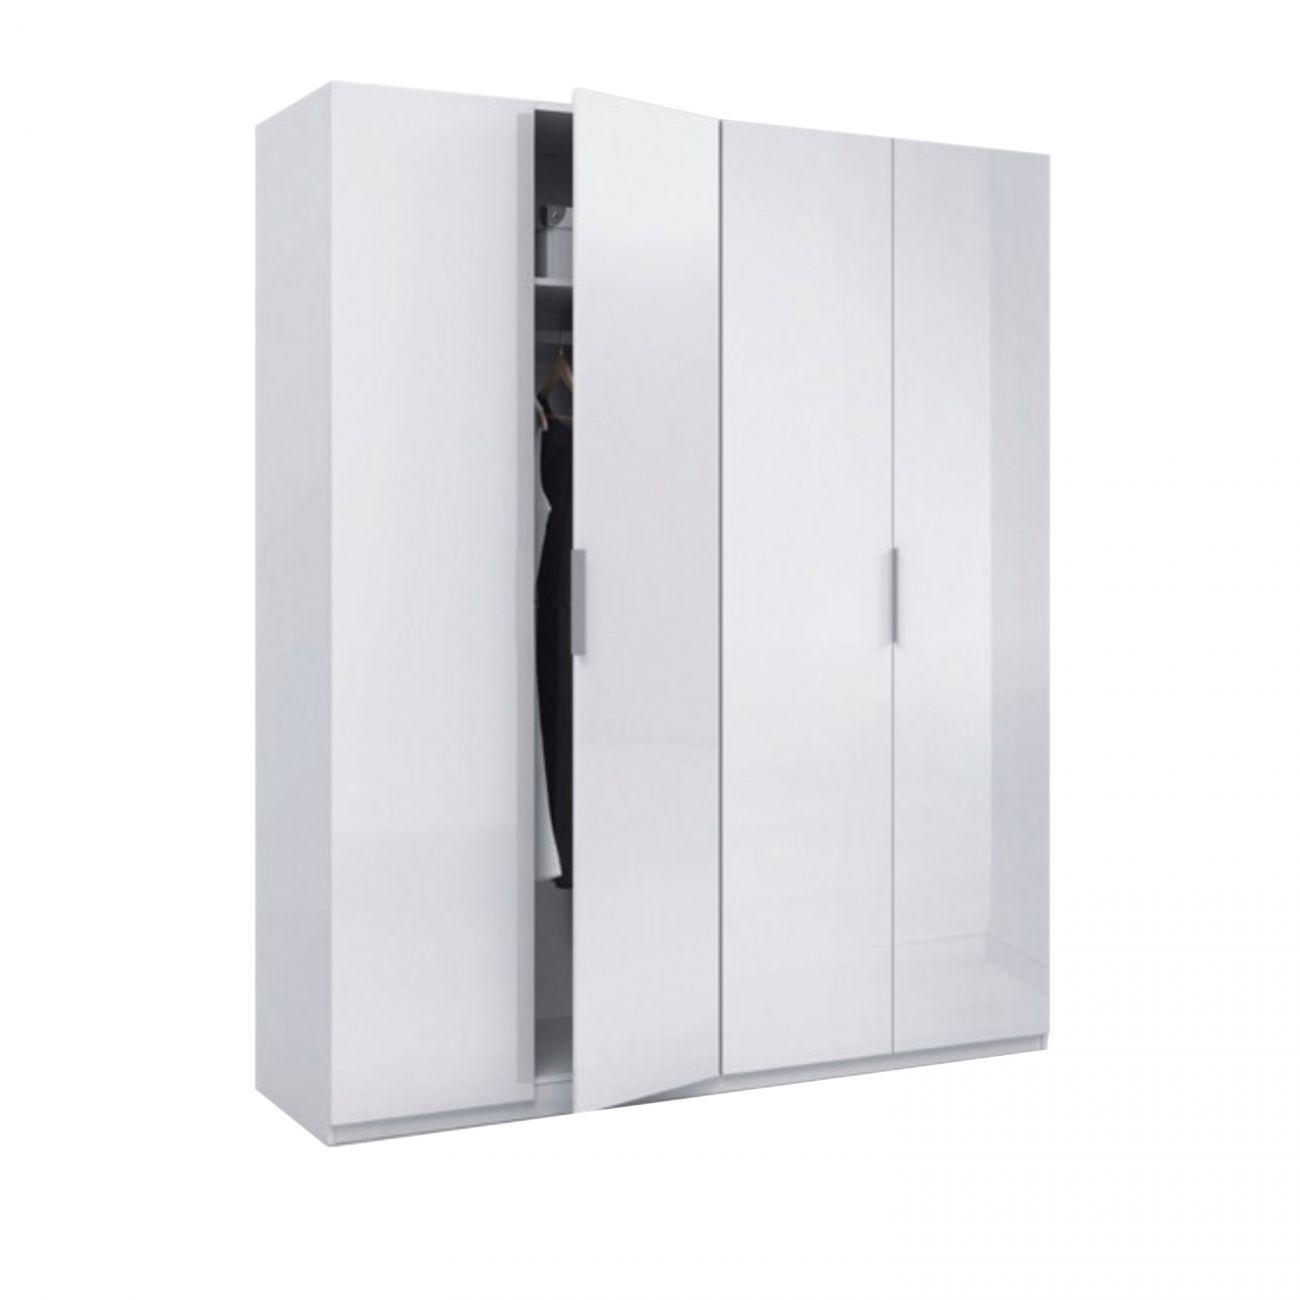 Armario almacenaje 4 puertas BASIC blanco lacado 102 x 163 cm